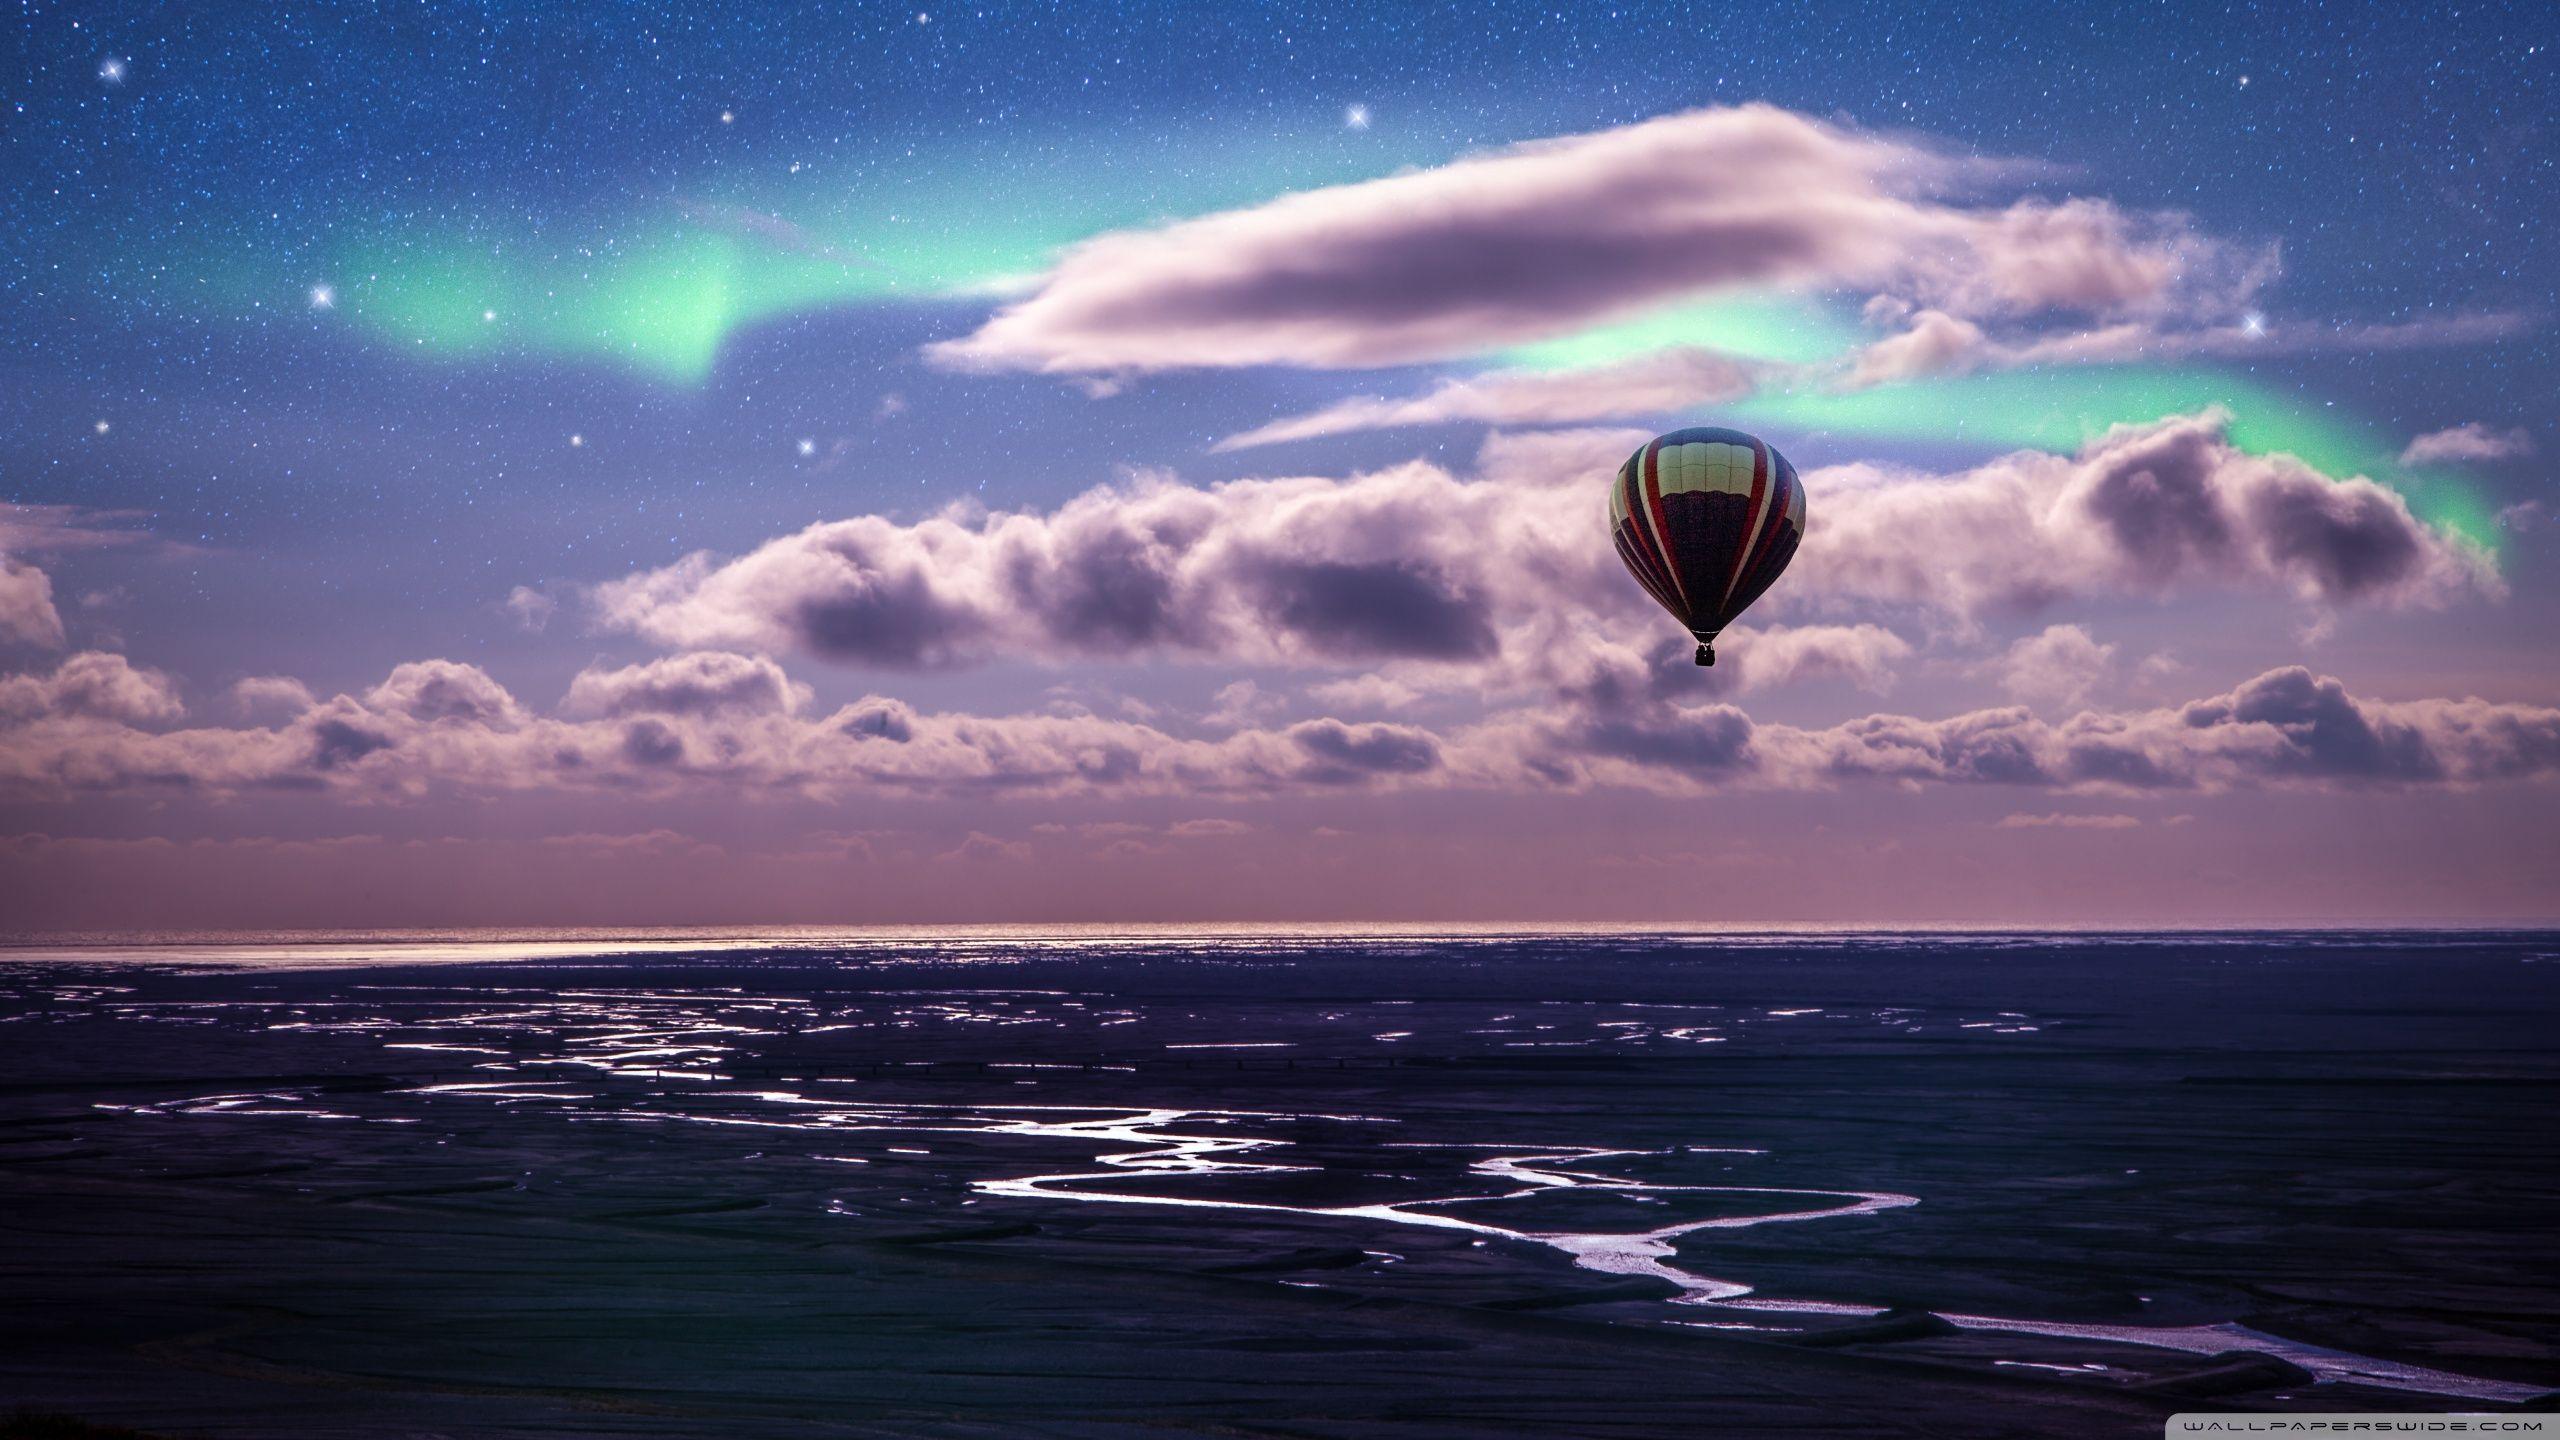 Hot Air Balloon Ride HD desktop wallpaper, Widescreen, High